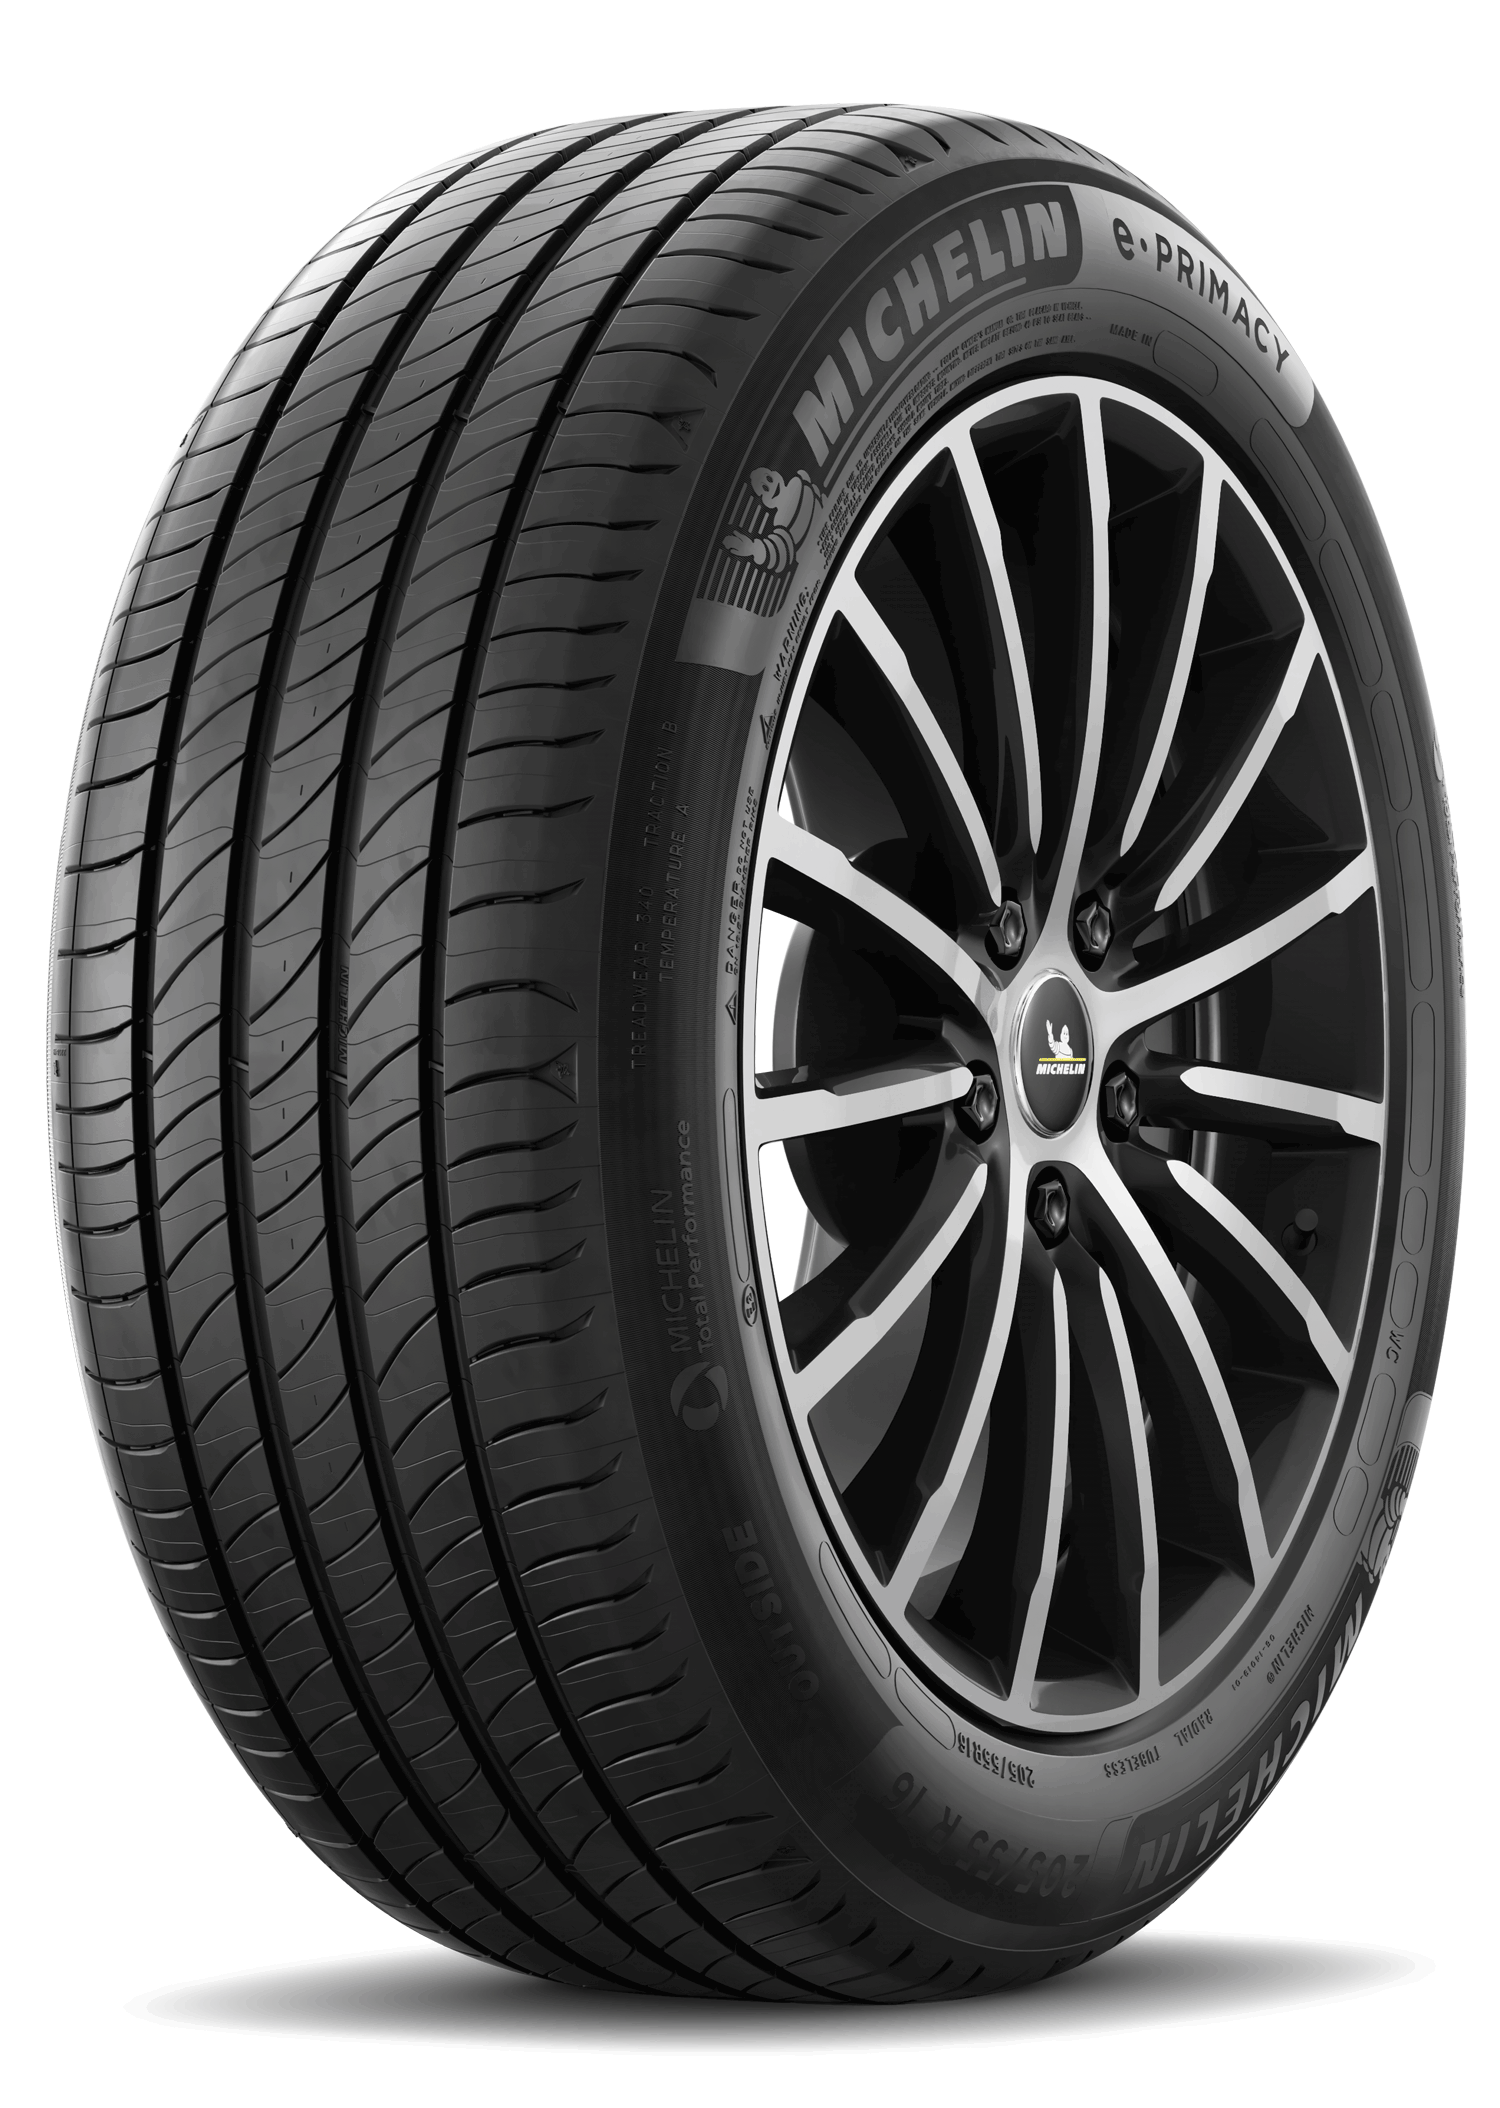 Gomme Nuove Michelin 185/60 R15 84H E PRIMACY pneumatici nuovi Estivo